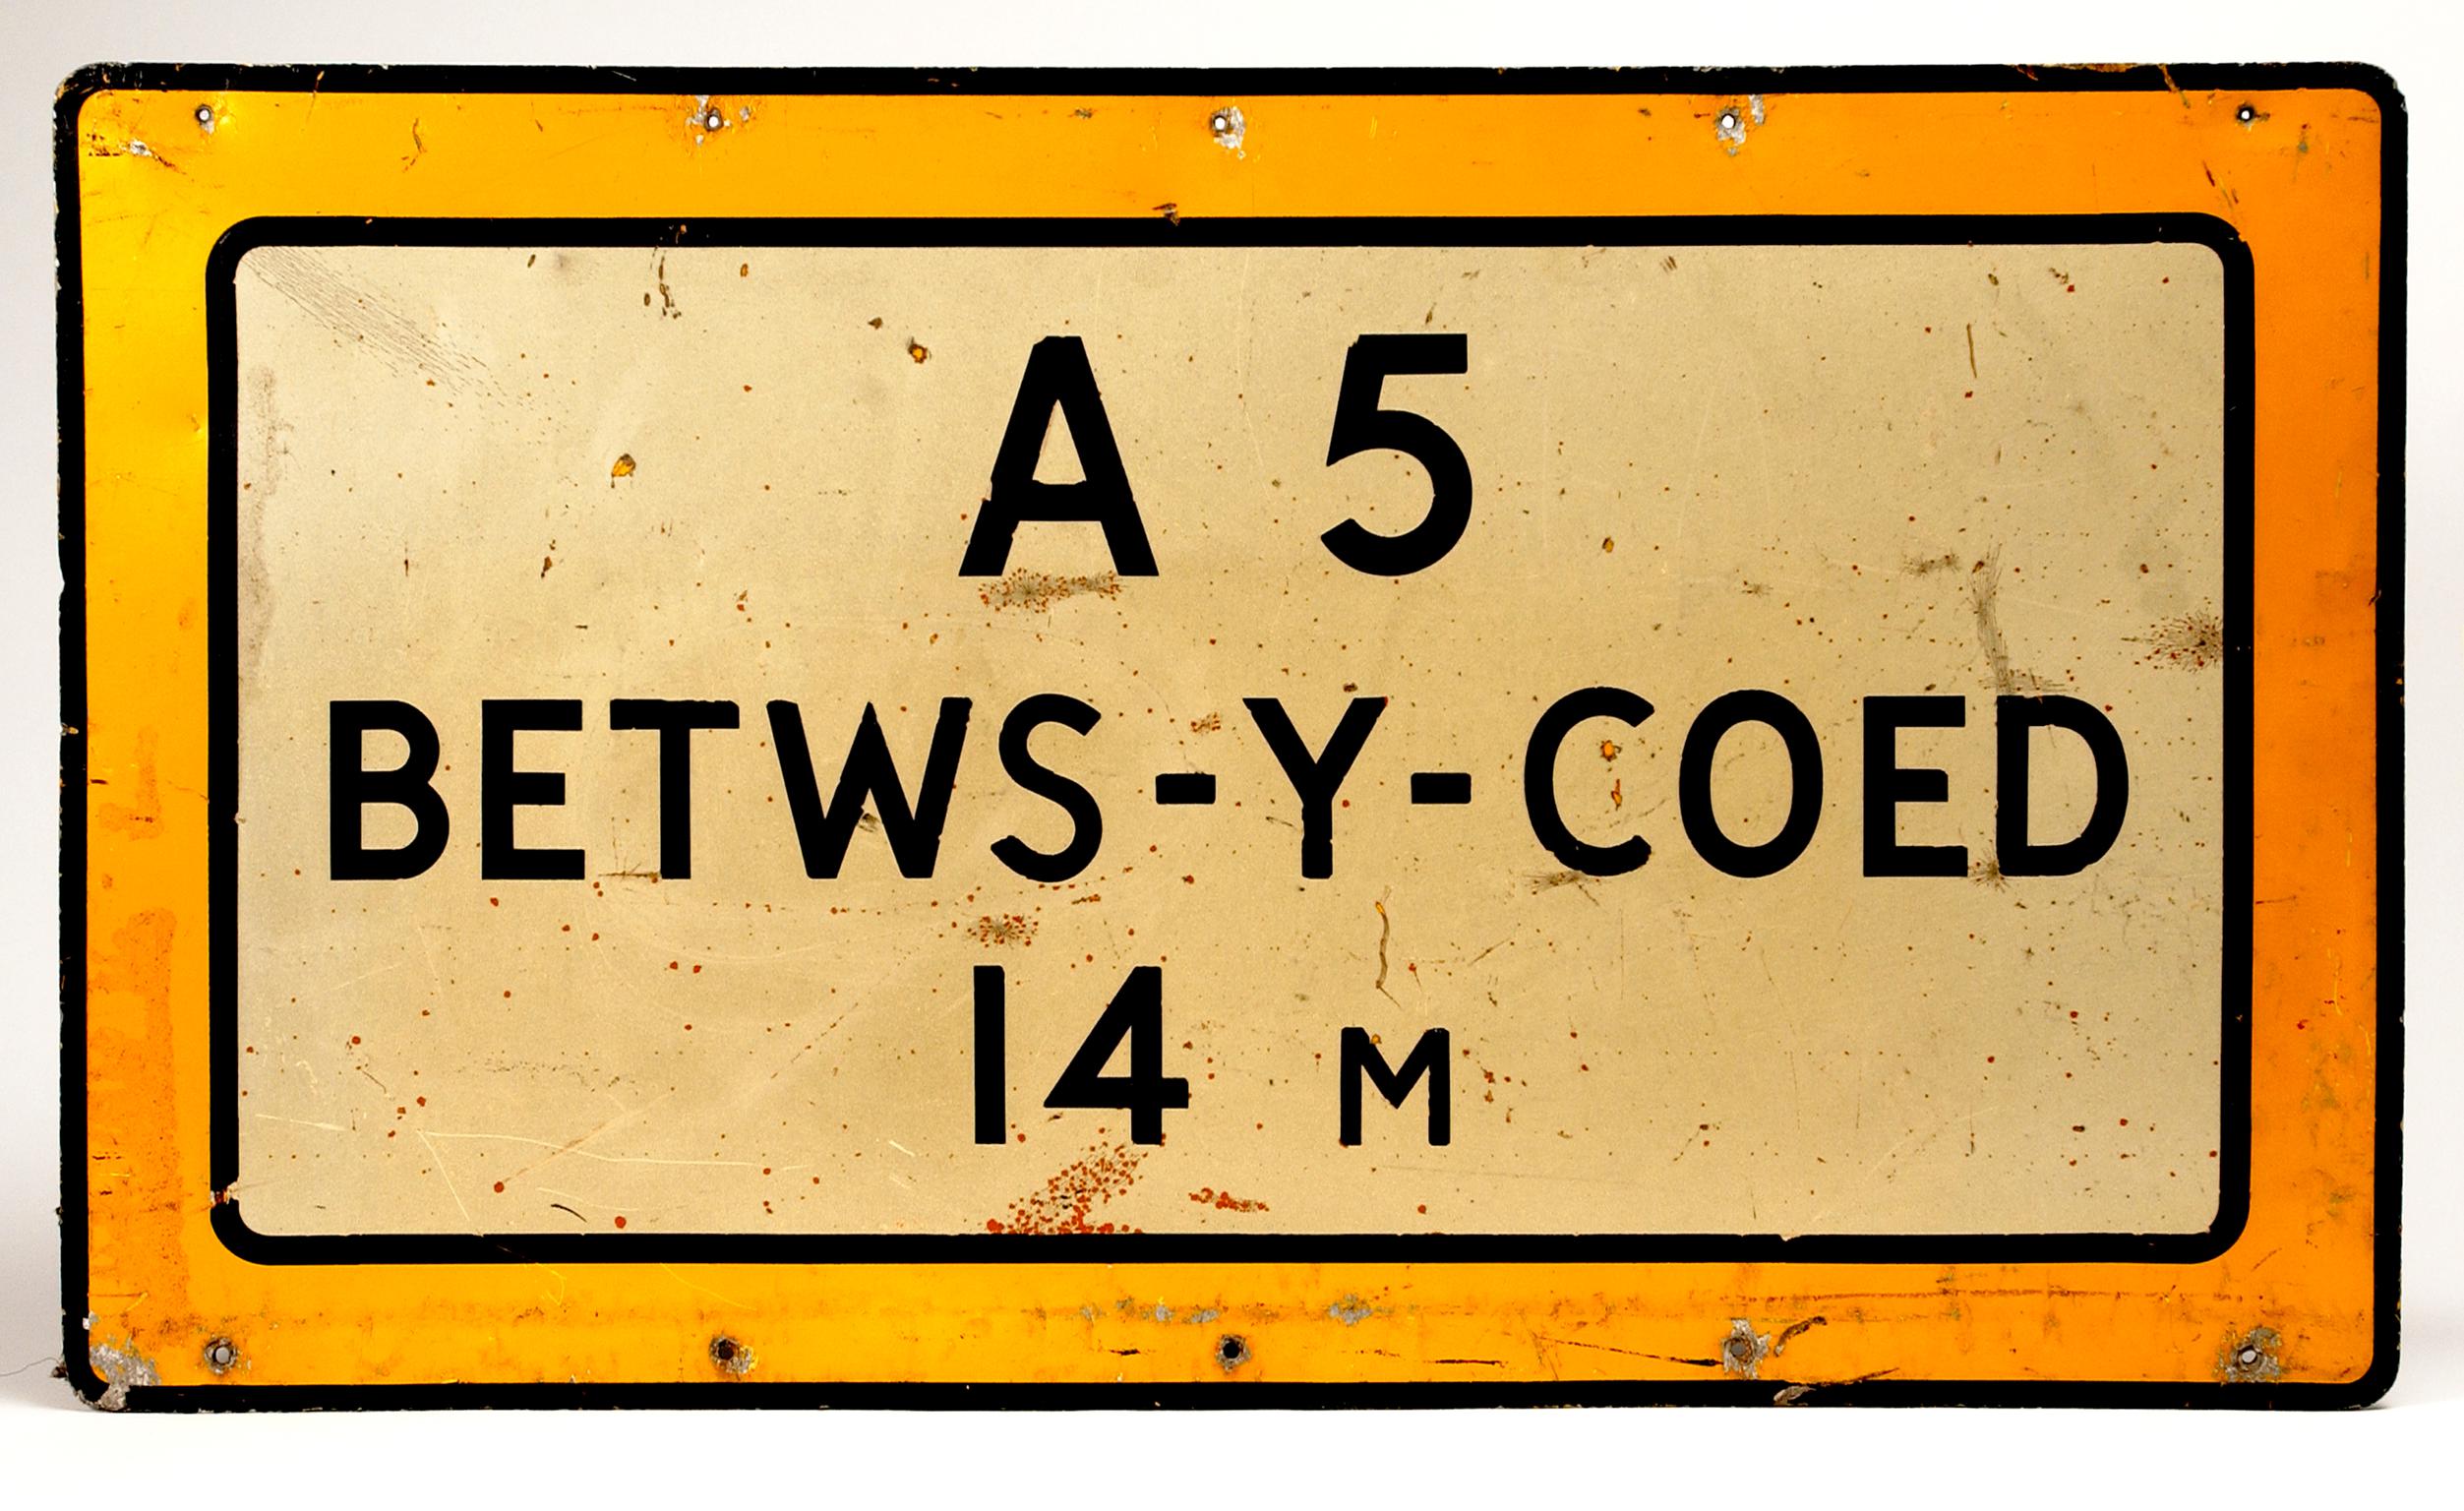 A5 Bettw-Y-Coed, road sign